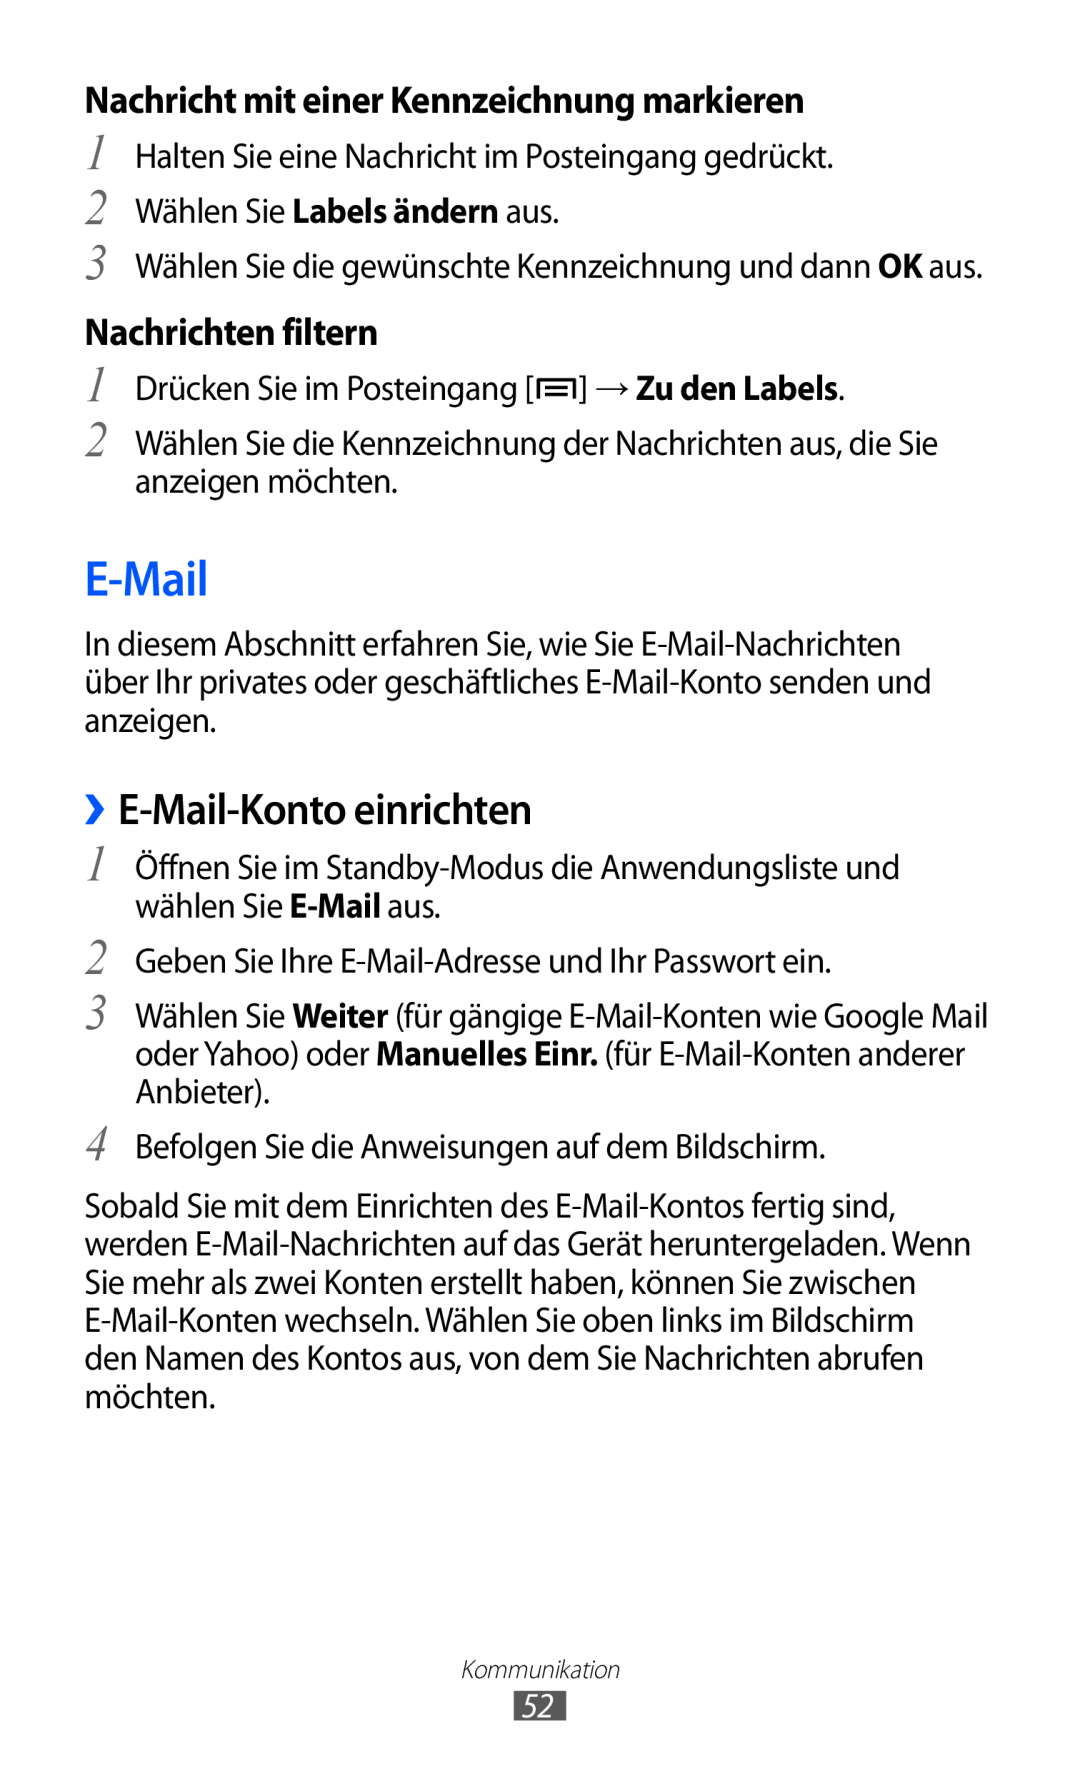 Samsung GT-S6500XKAVD2 ››E-Mail-Konto einrichten, Nachricht mit einer Kennzeichnung markieren, Nachrichten filtern 